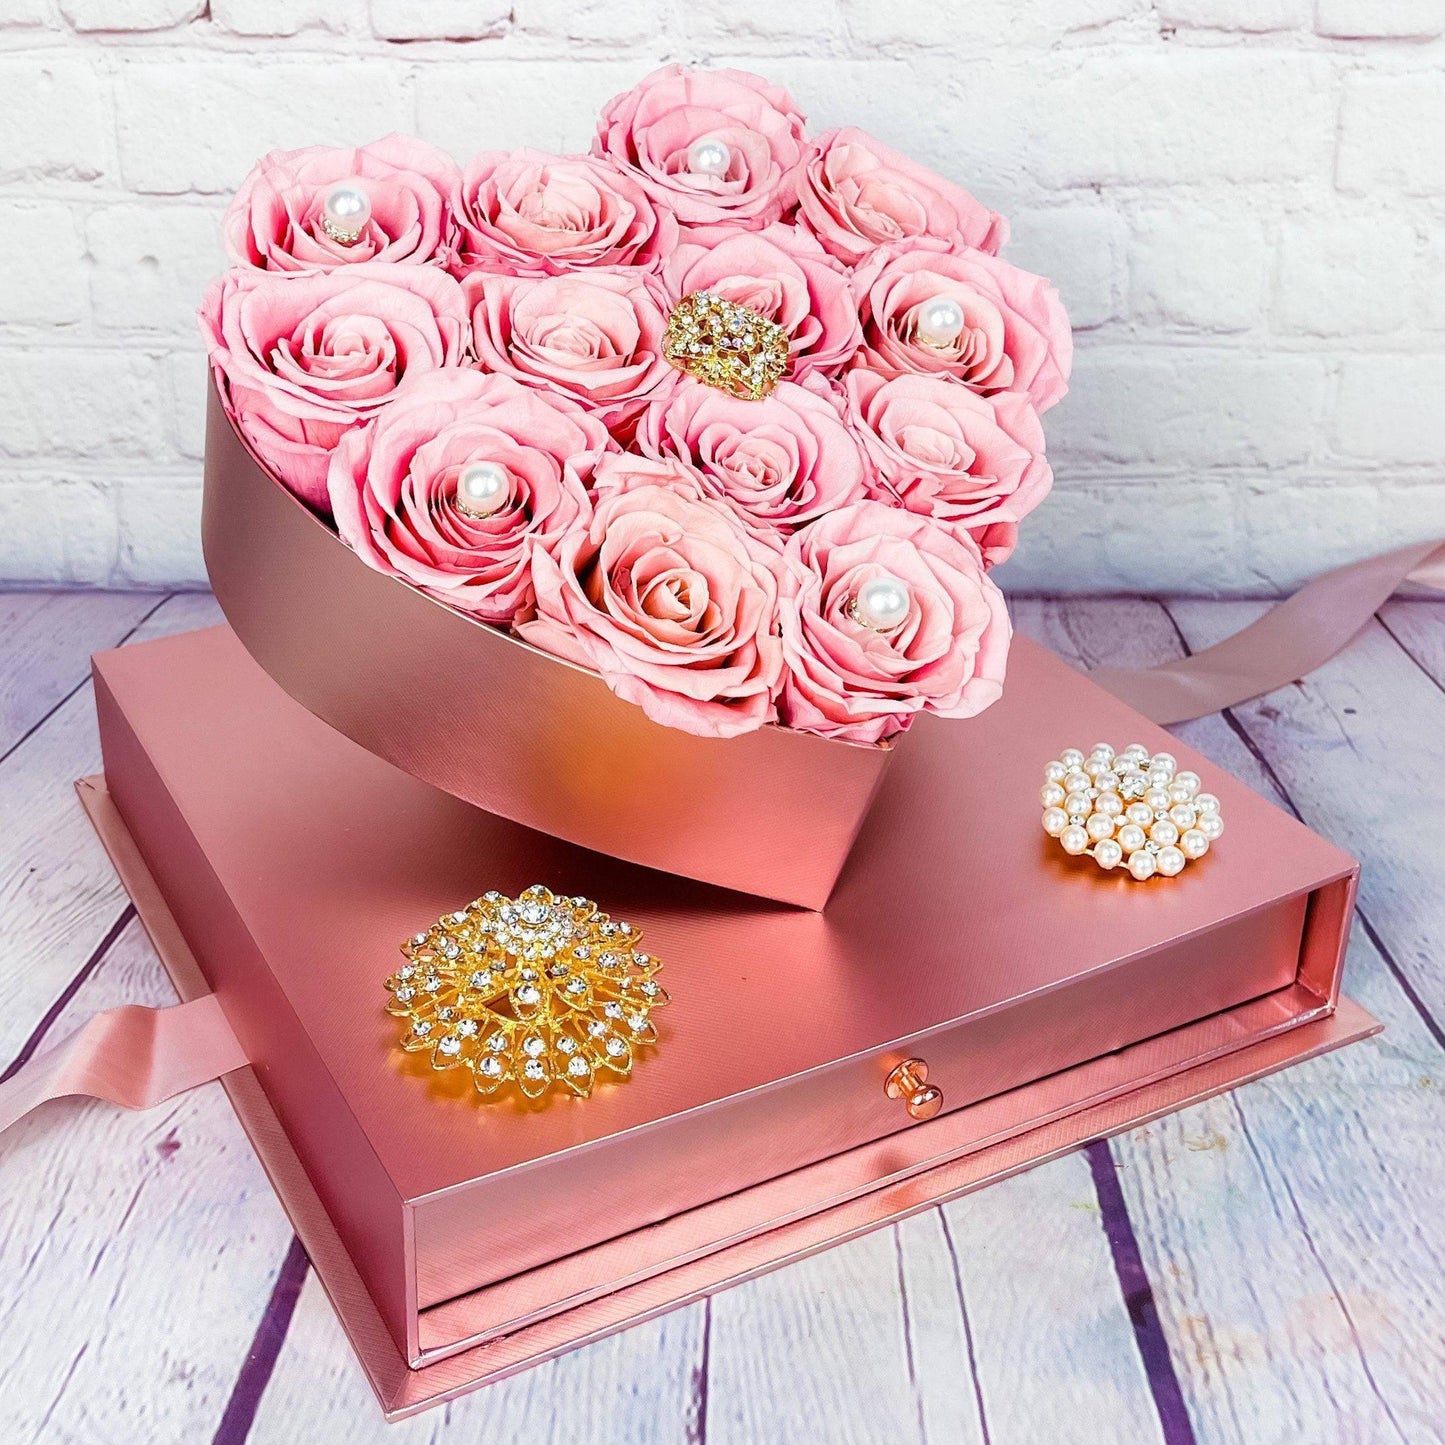 Rose Heart Gift Box - Forever Roses - DGM Flowers  | Fort Lauderdale Florist